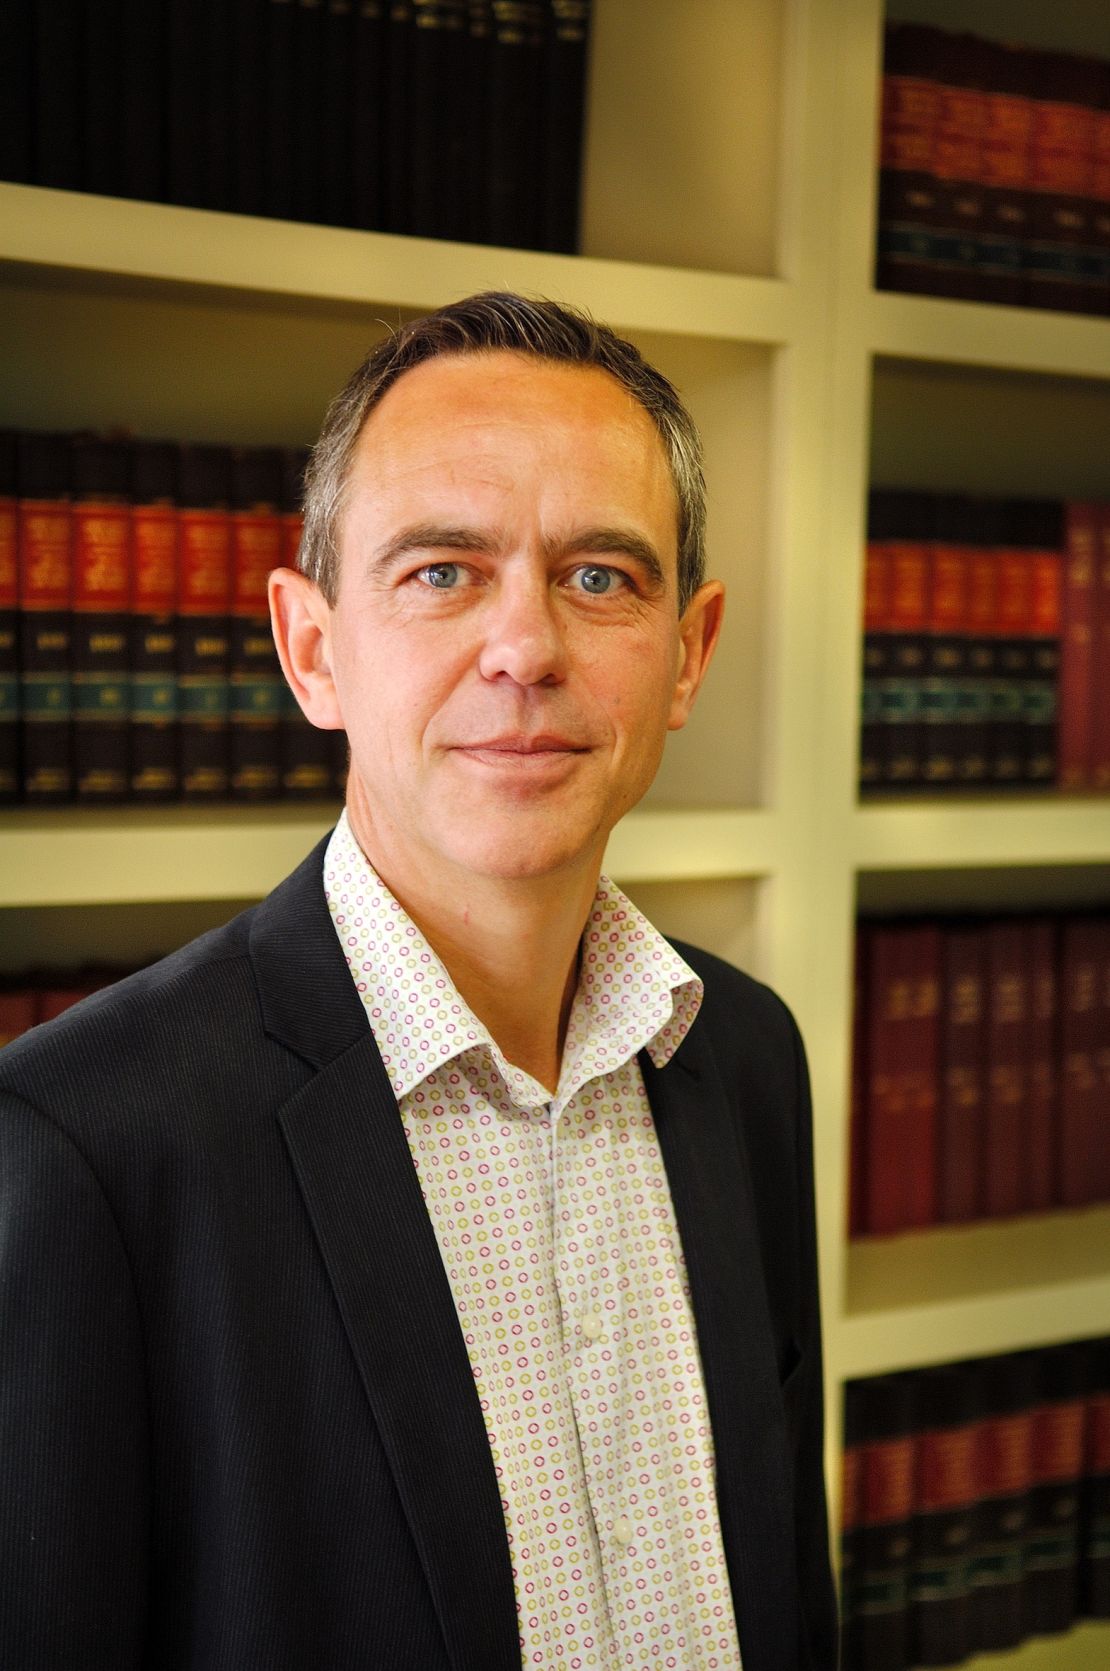 South Africa legal expert Pierre de Vos